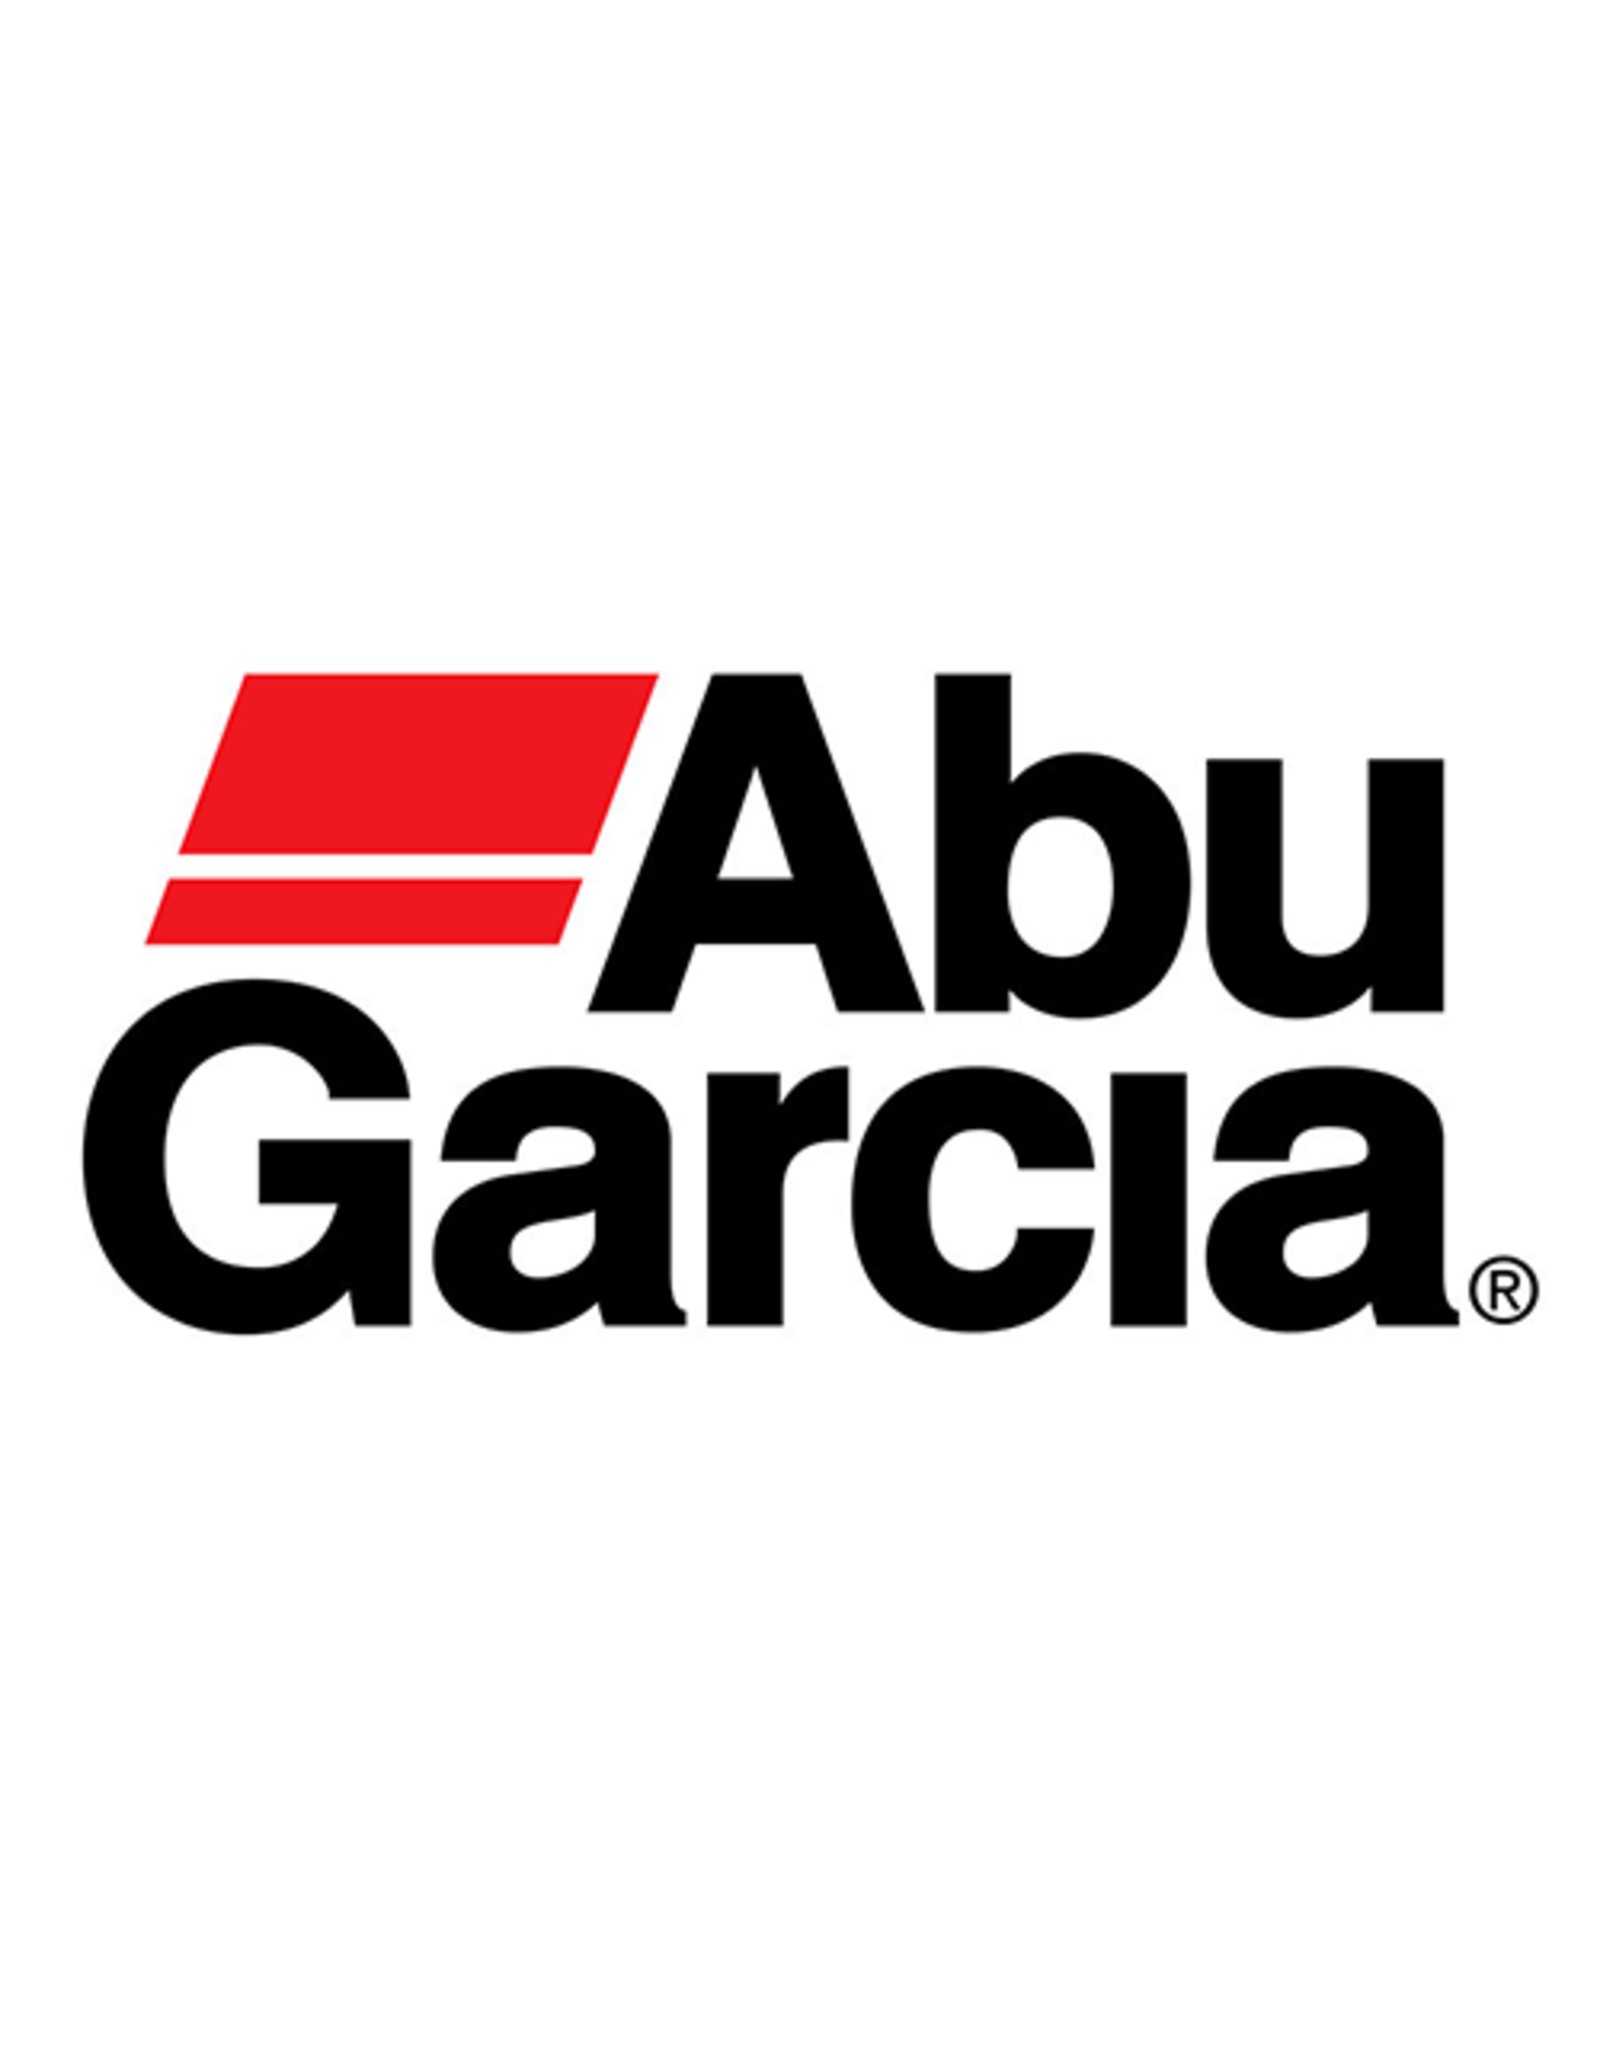 Abu Garcia 1126265  LINE ROLLER